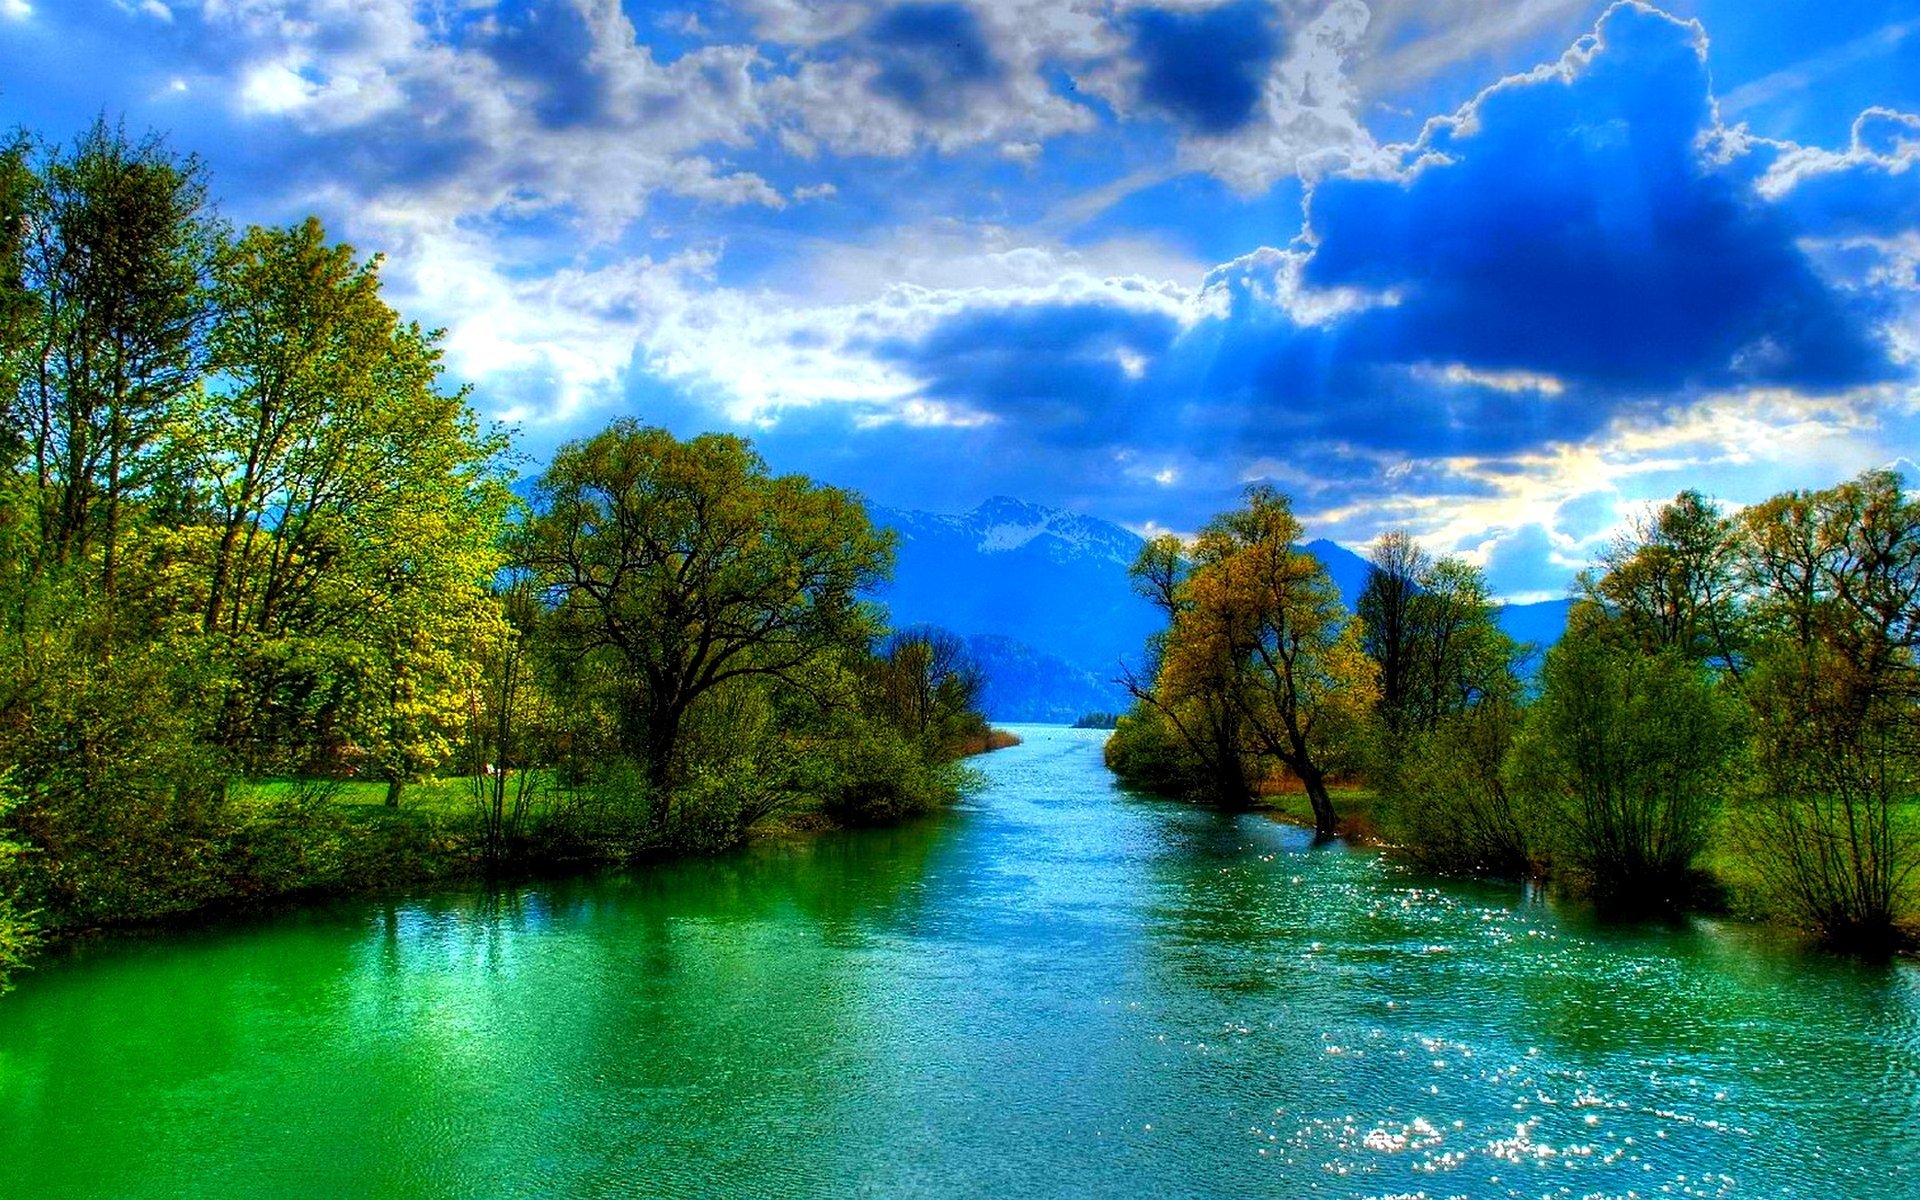 Hình ảnh dòng sông tuyệt đẹp